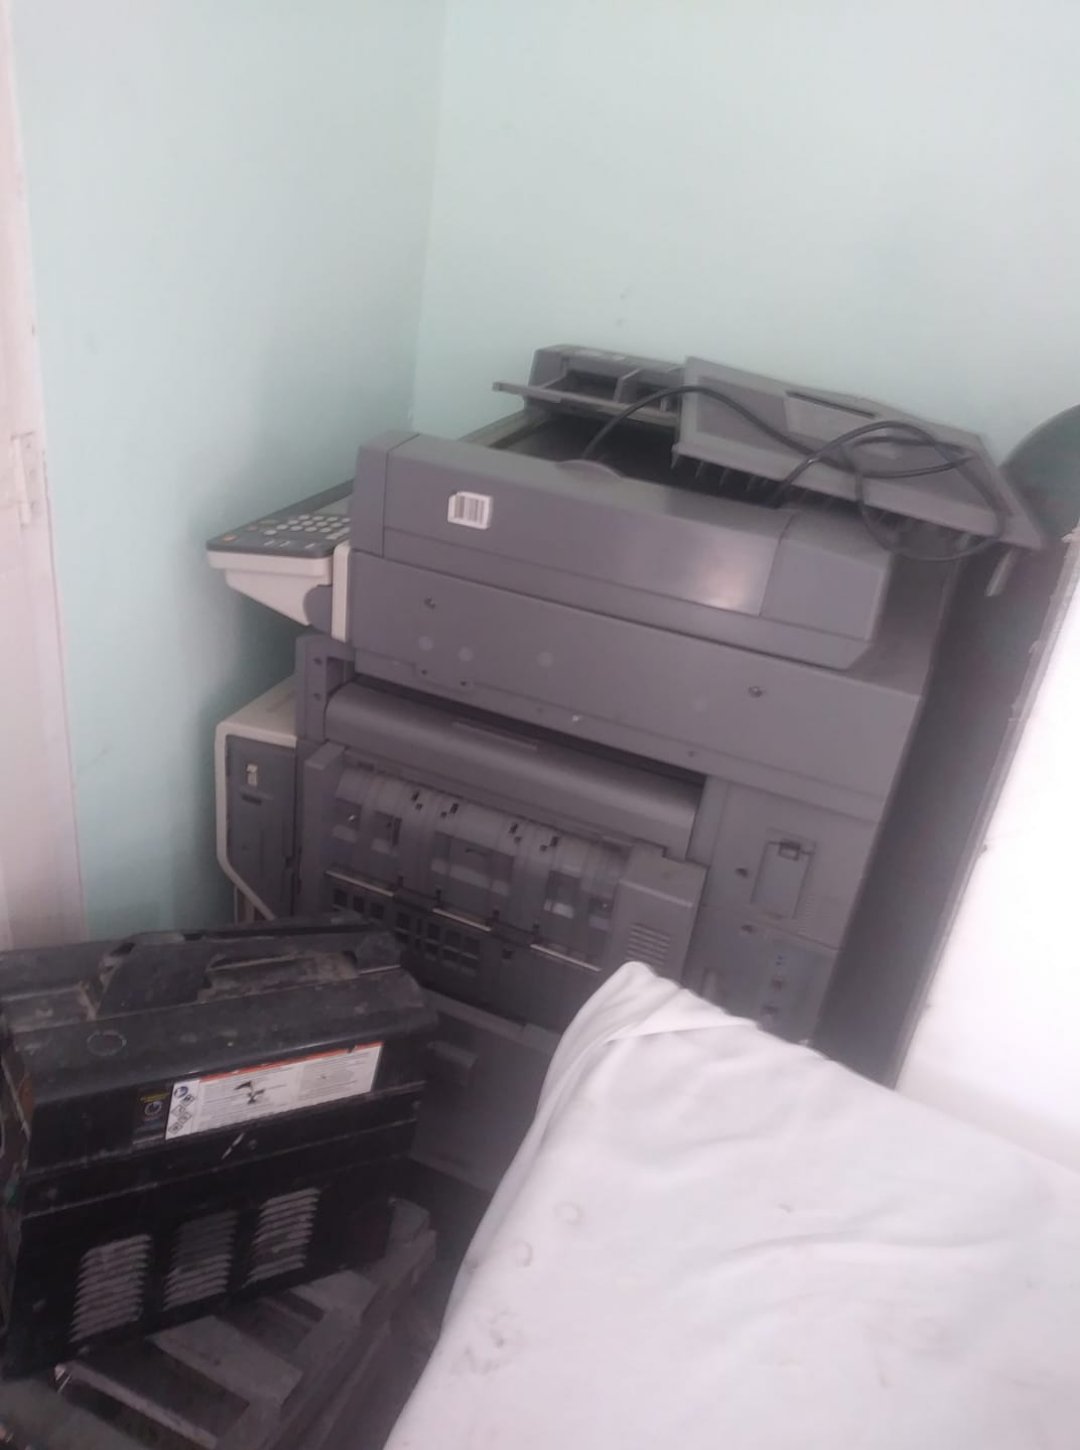 impresoras y scanners - fotocopiadora 